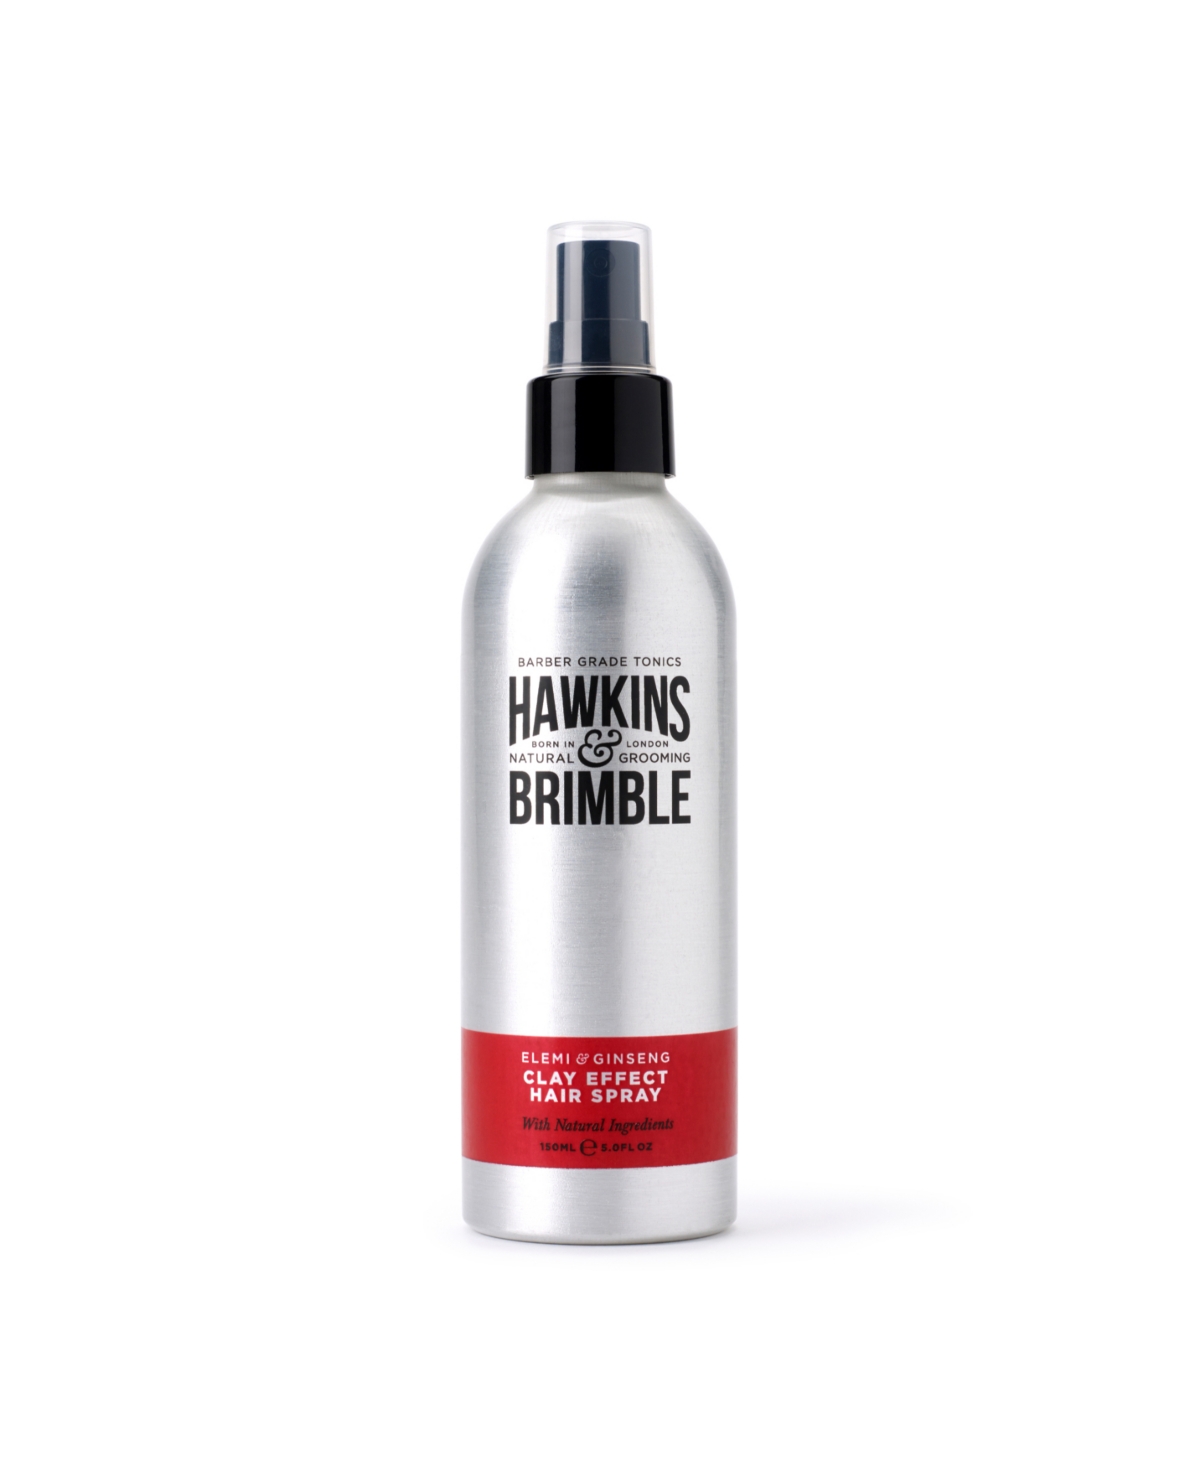 Hawkins Brimble Clay Effect Hair Spray, 5 fl oz - Silver